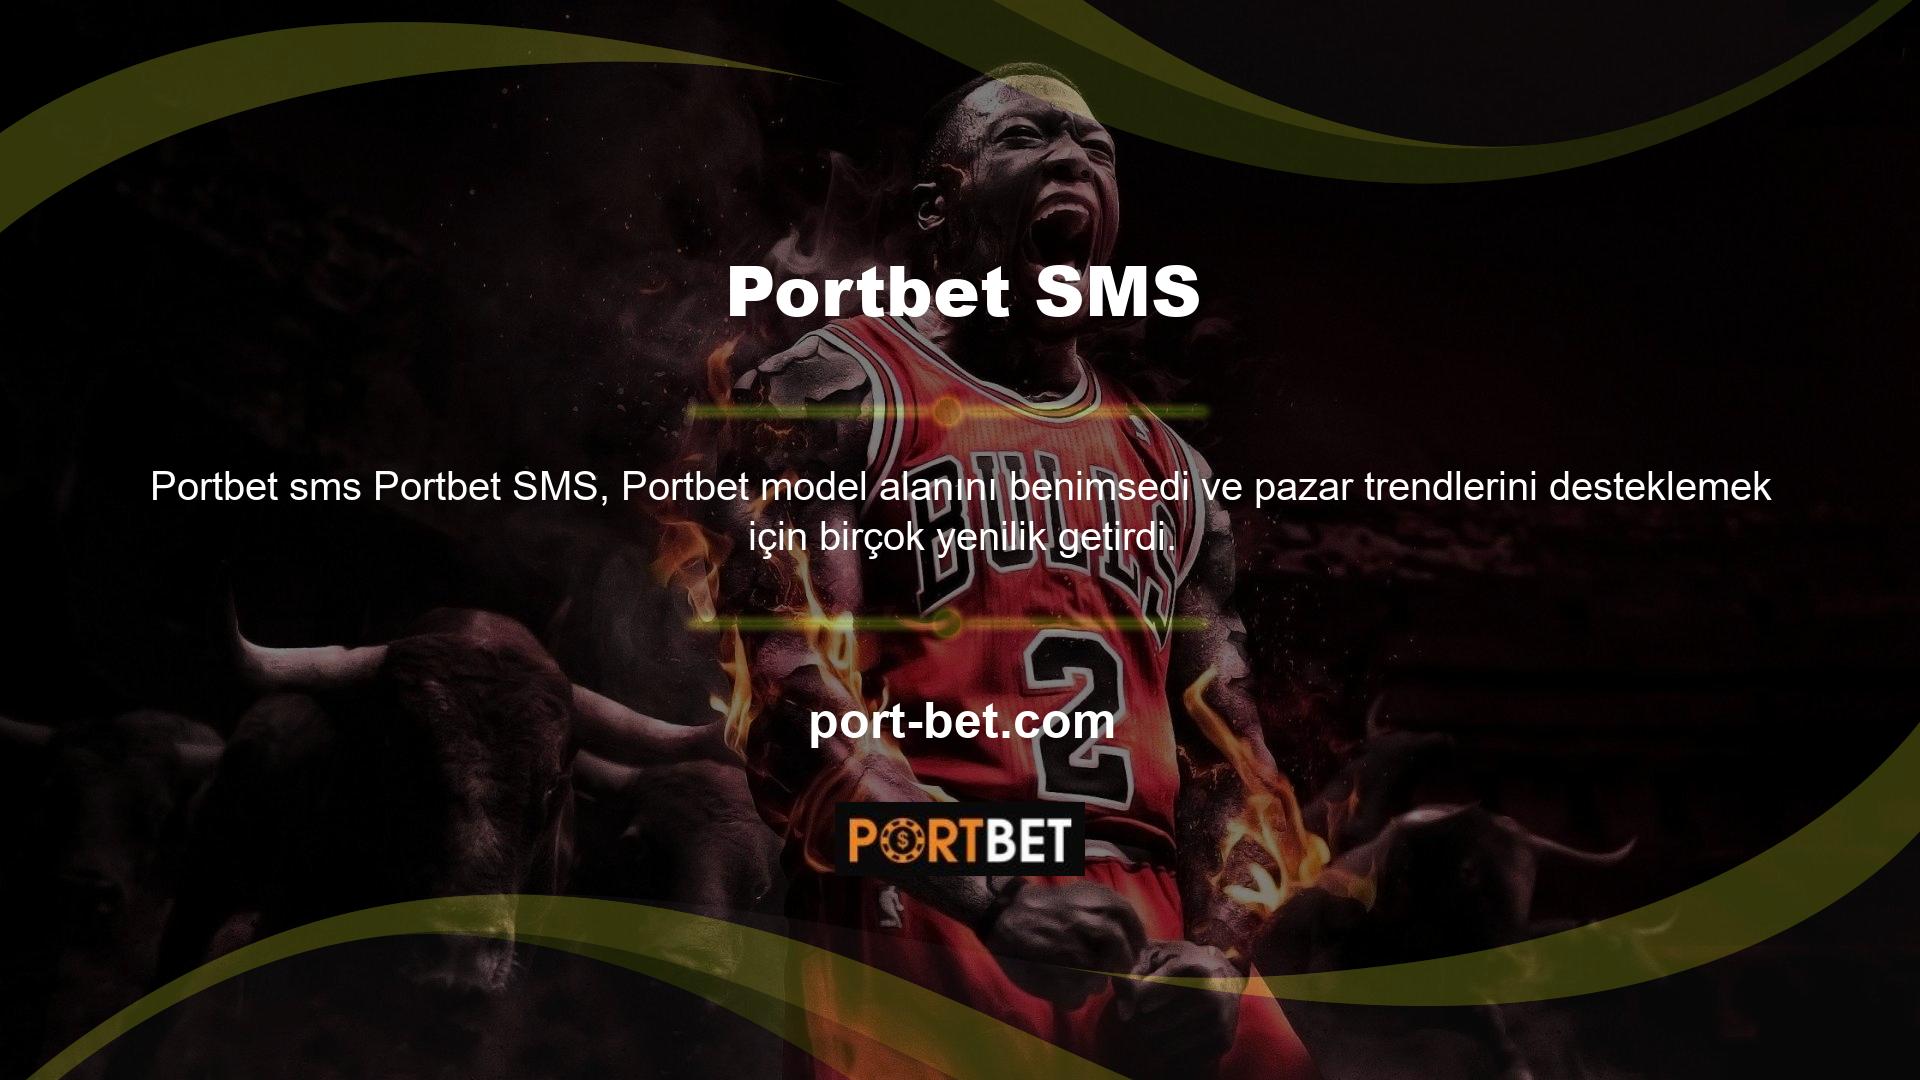 Bu bölgede en çok üyeye sahip olan site ise Portbet